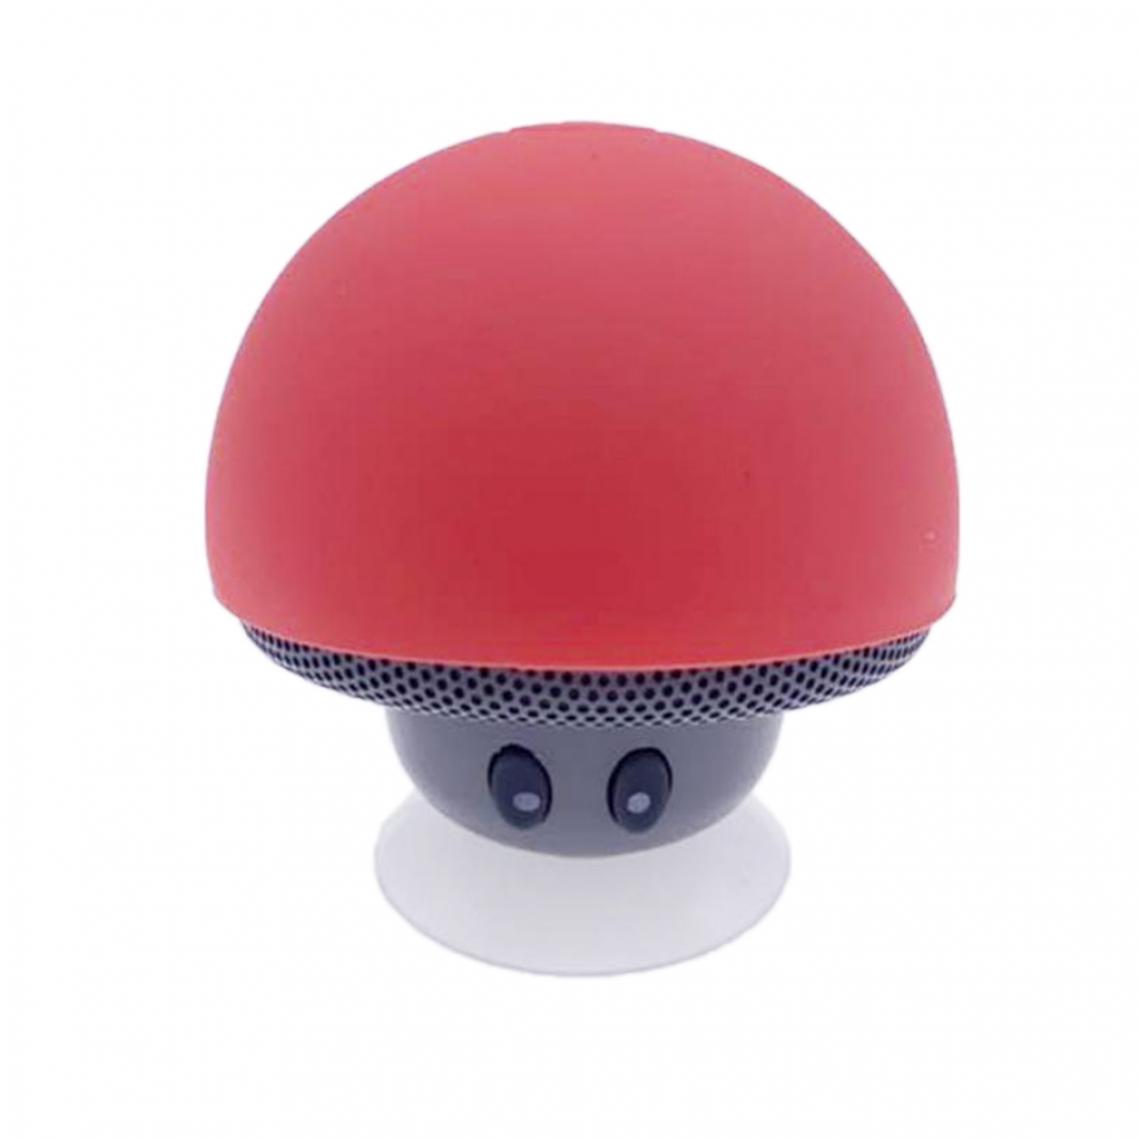 marque generique - Haut-parleur Portable D'aspiration De Forme De Champignon Mignon Bluetooth Bluetooth Rouge Et Gris Clair - Barre de son